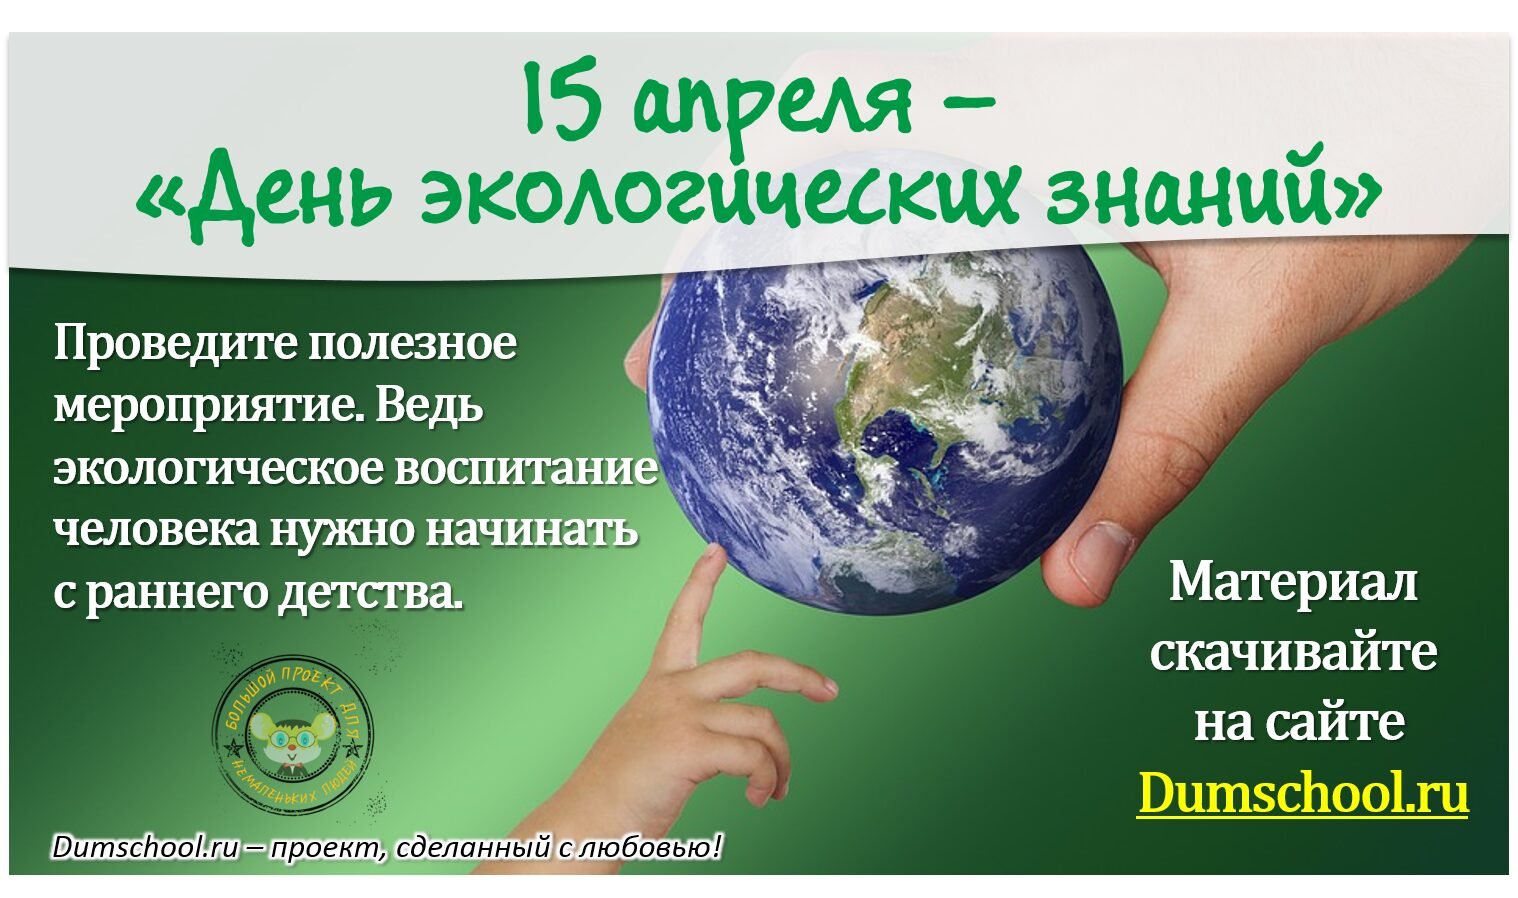 15 апреля экологических знаний. 15 Апреля день экологических знаний. Всемирный день экологических знаний. День экологической грамотности. Открытка день экологических знаний.